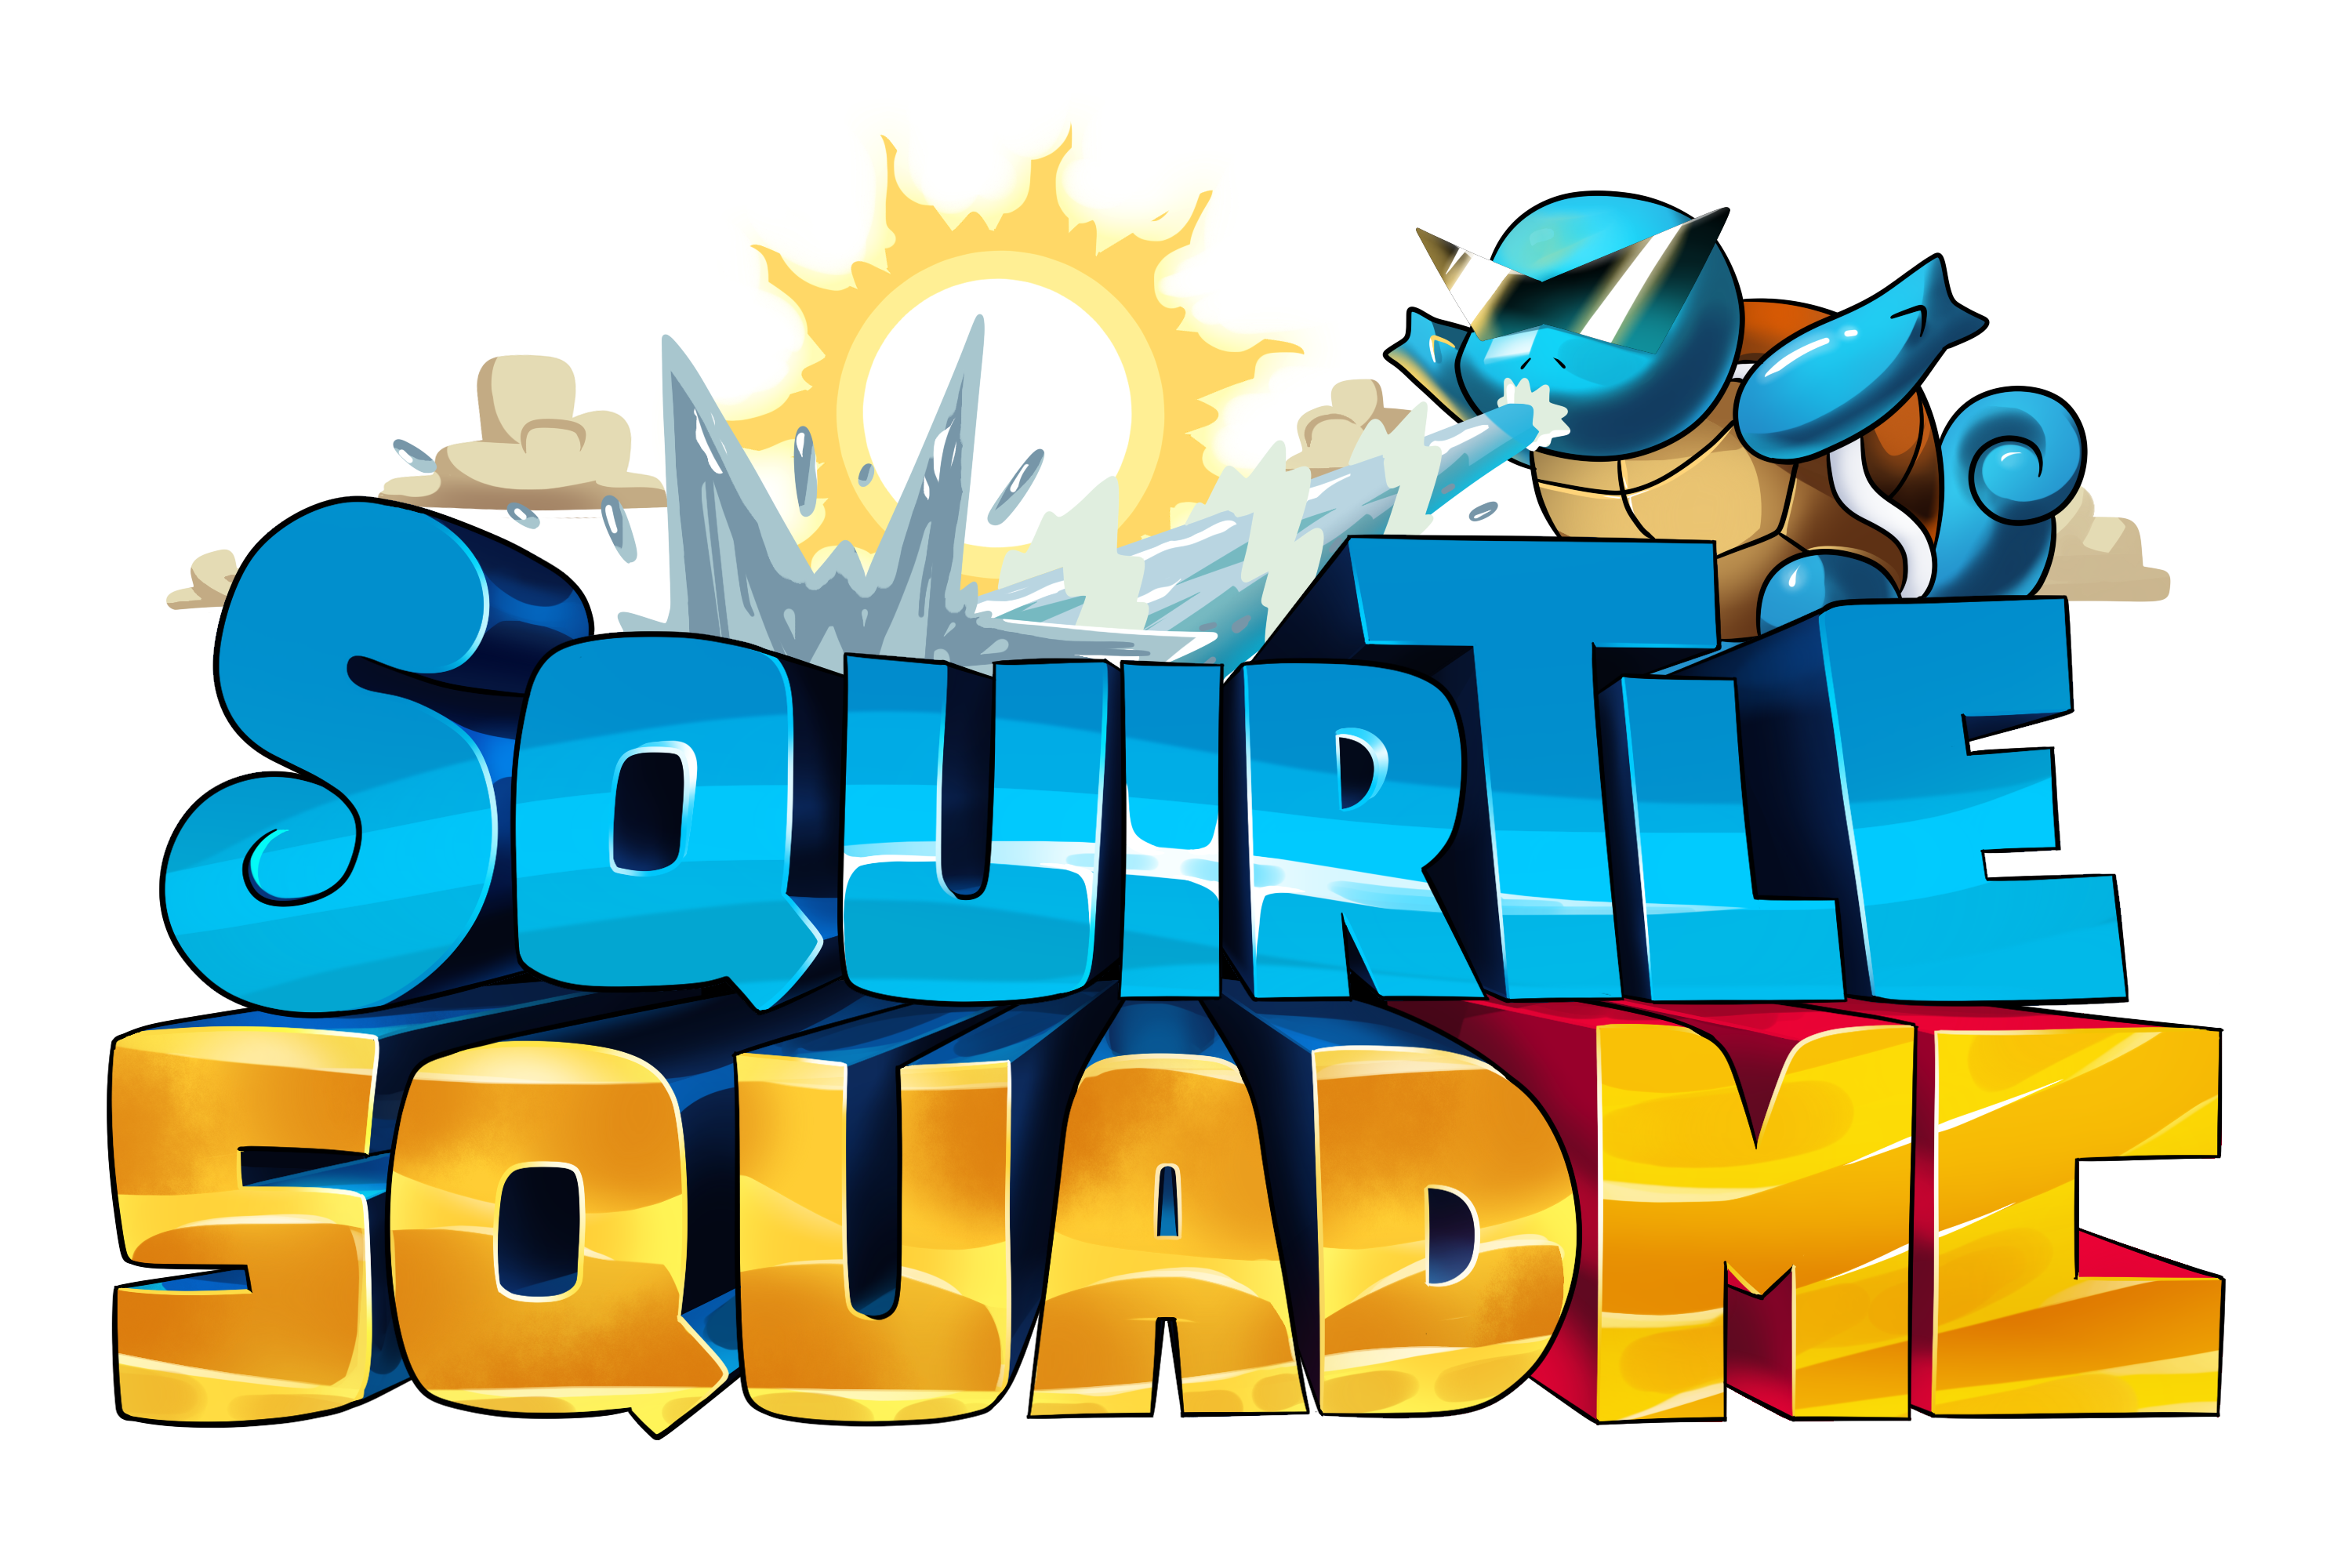 SquirtleSquadMC